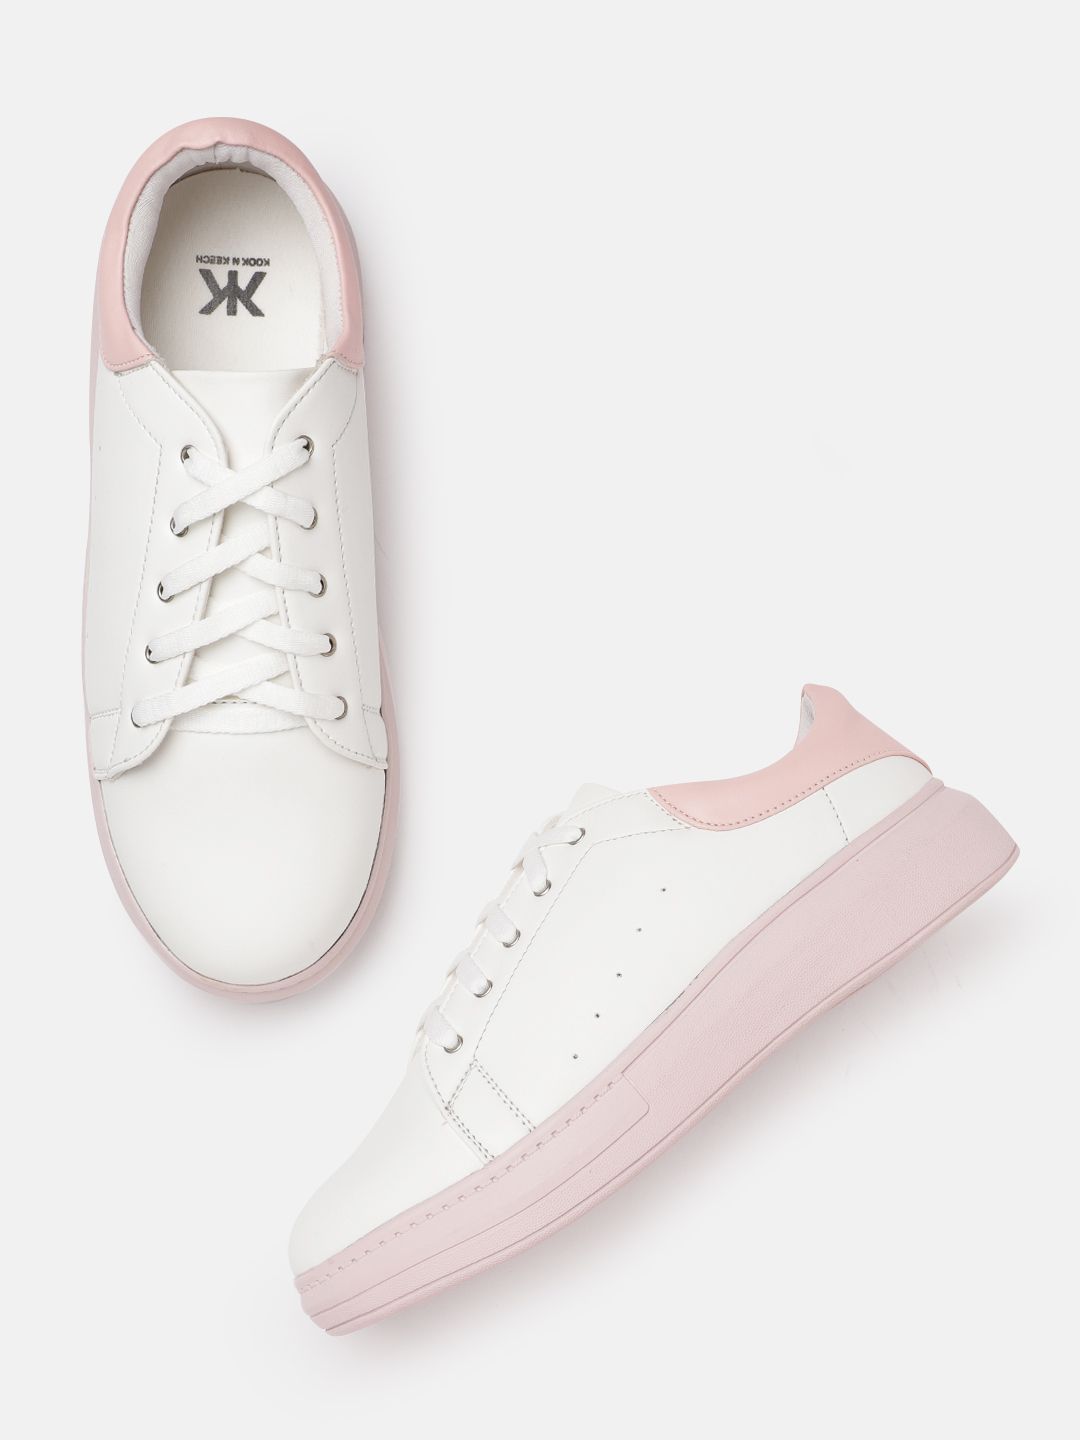 Kook N Keech Women White & Pink Sneakers Price in India